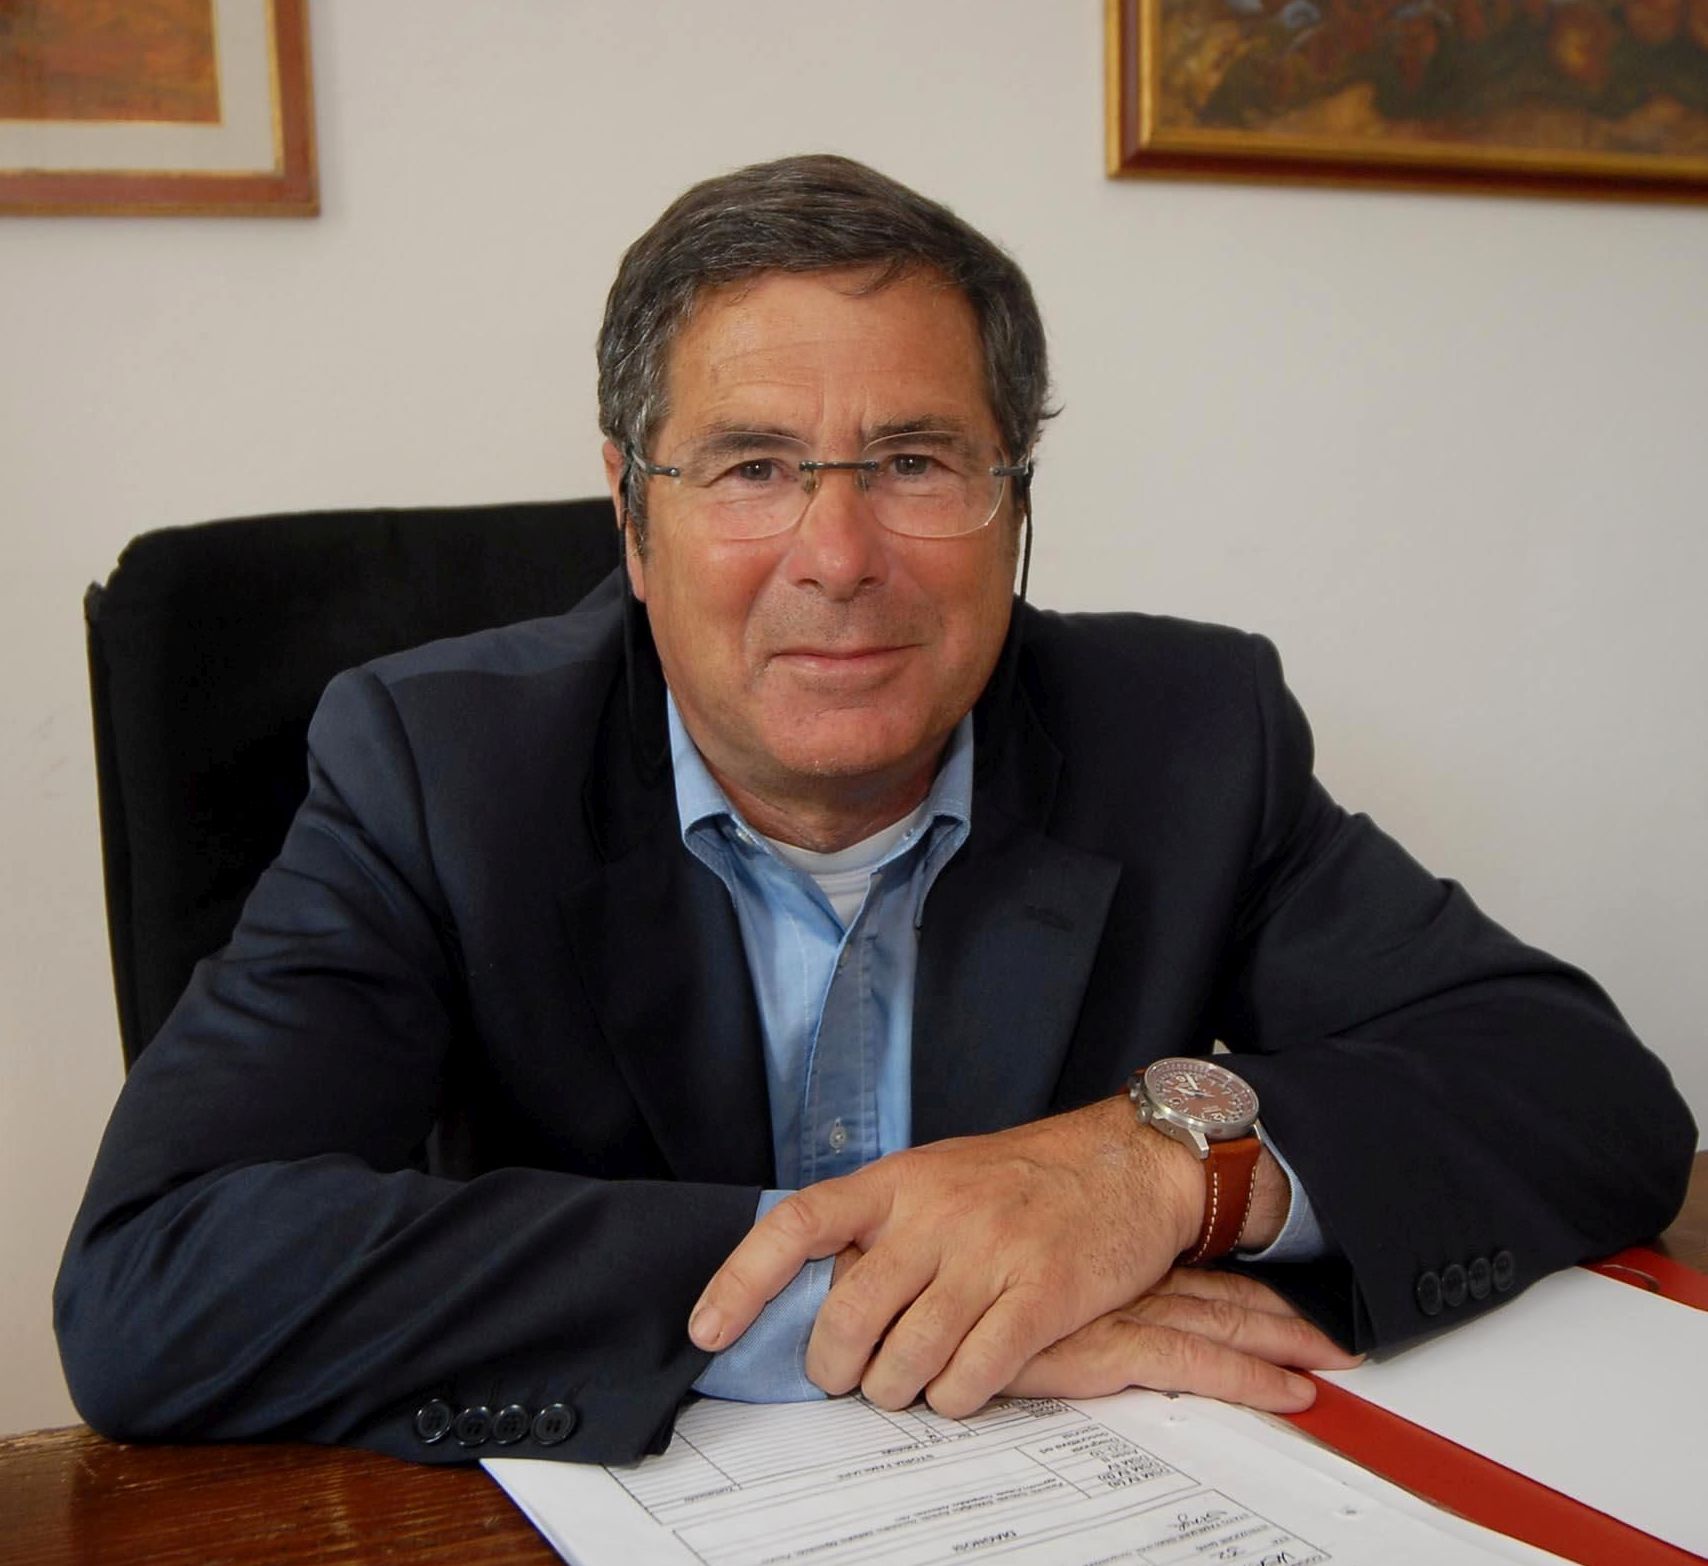 Prof. dr. Carlo Faravelli